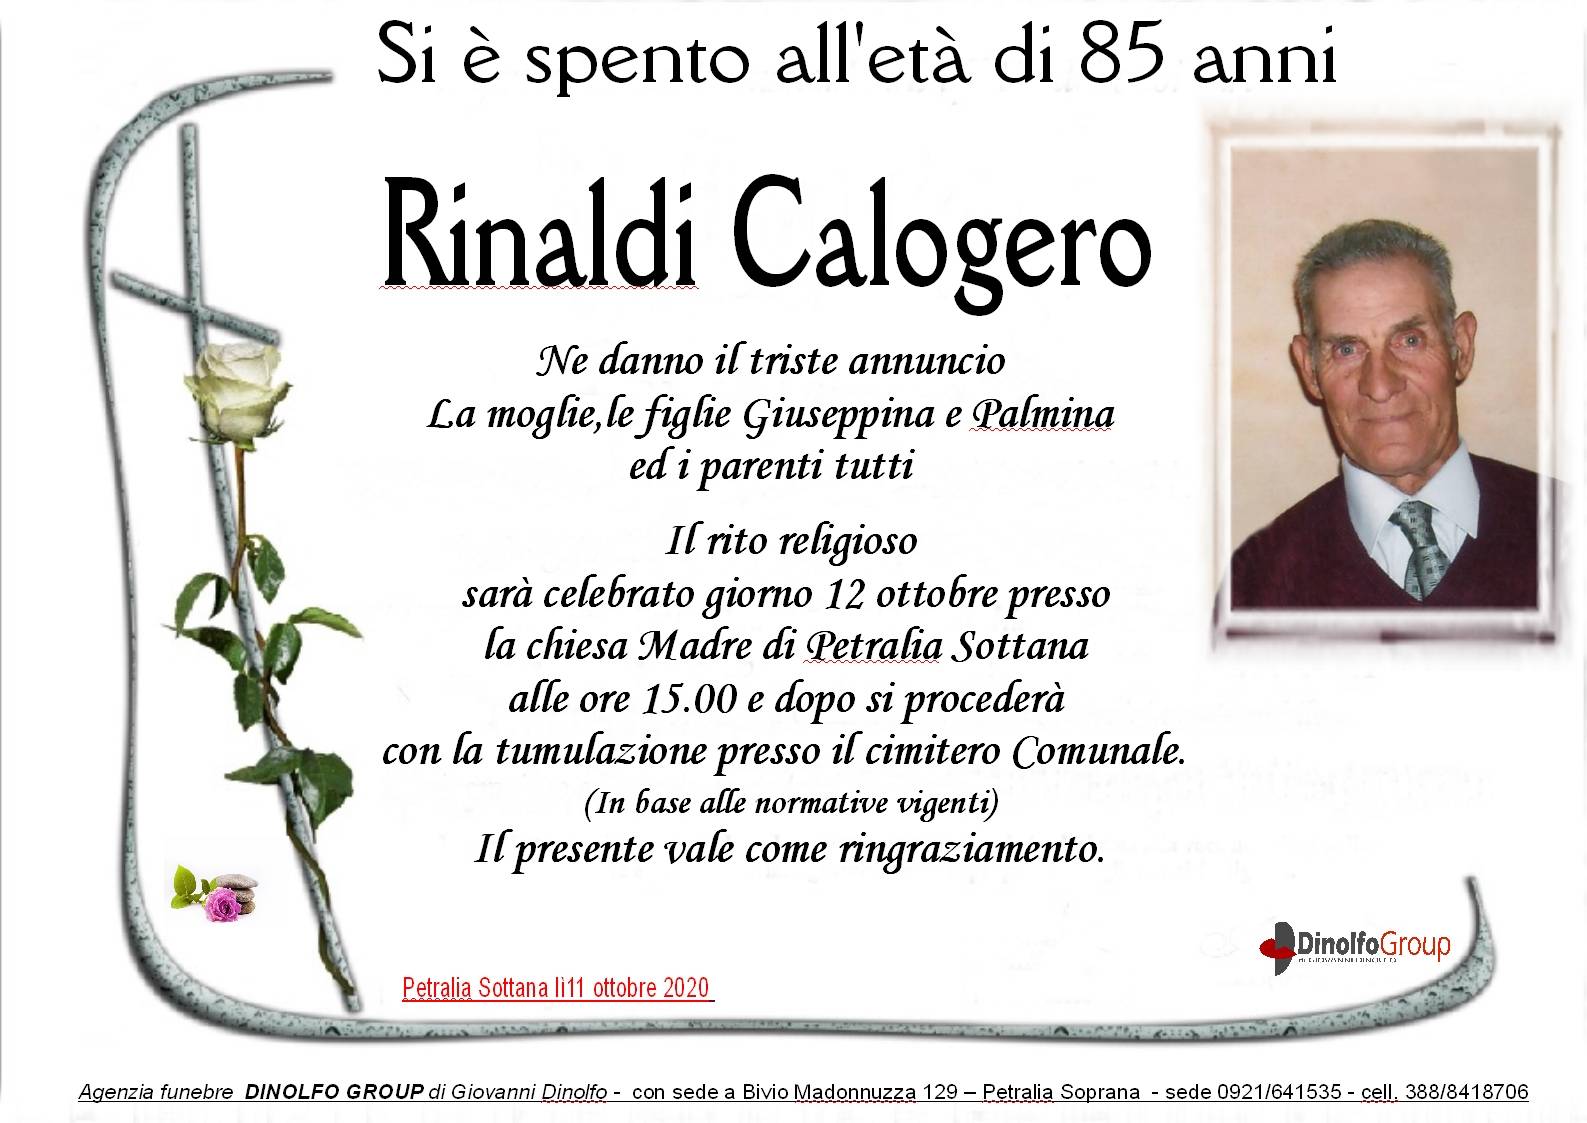 Calogero Rinaldi